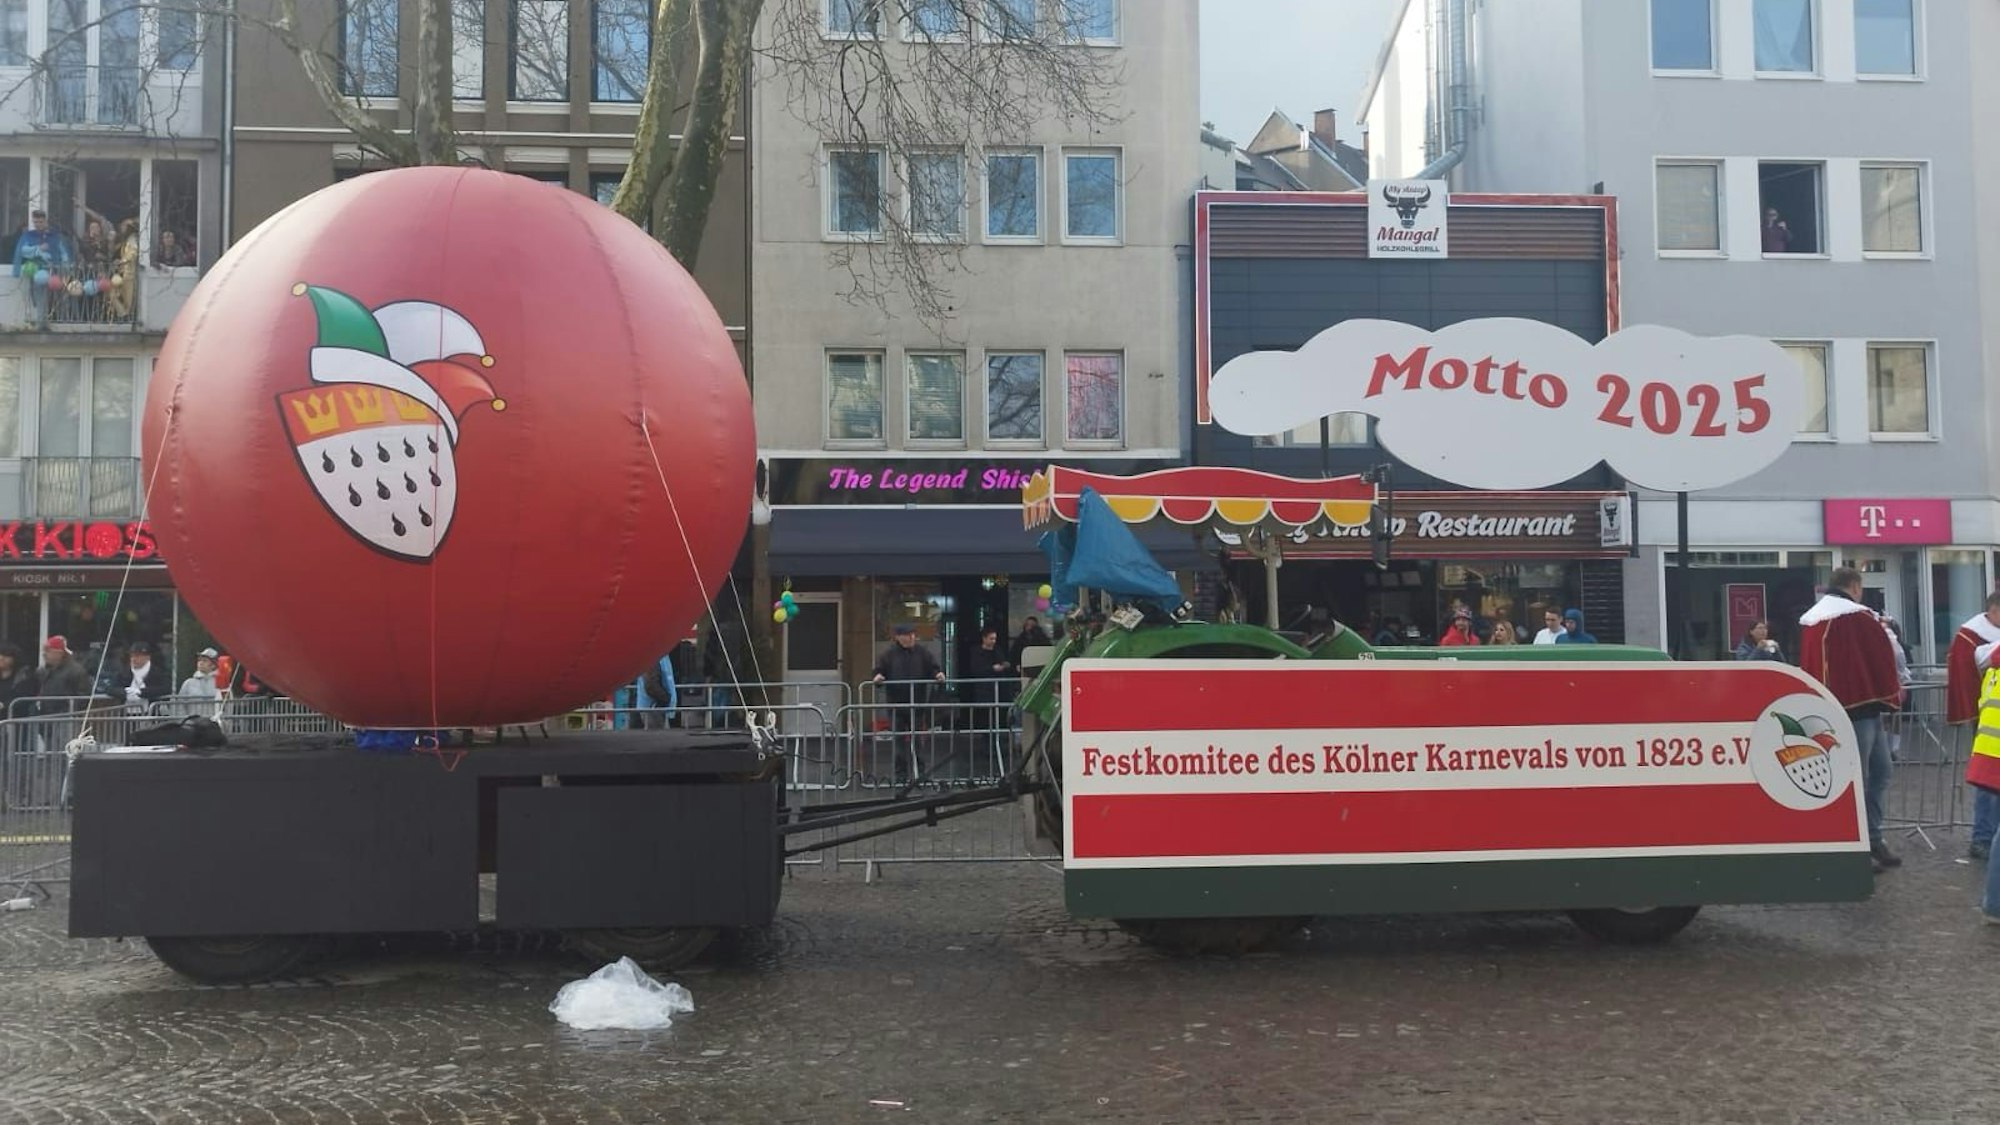 Mottowagen mit dem Motto für die neue Session im Kölner Karneval